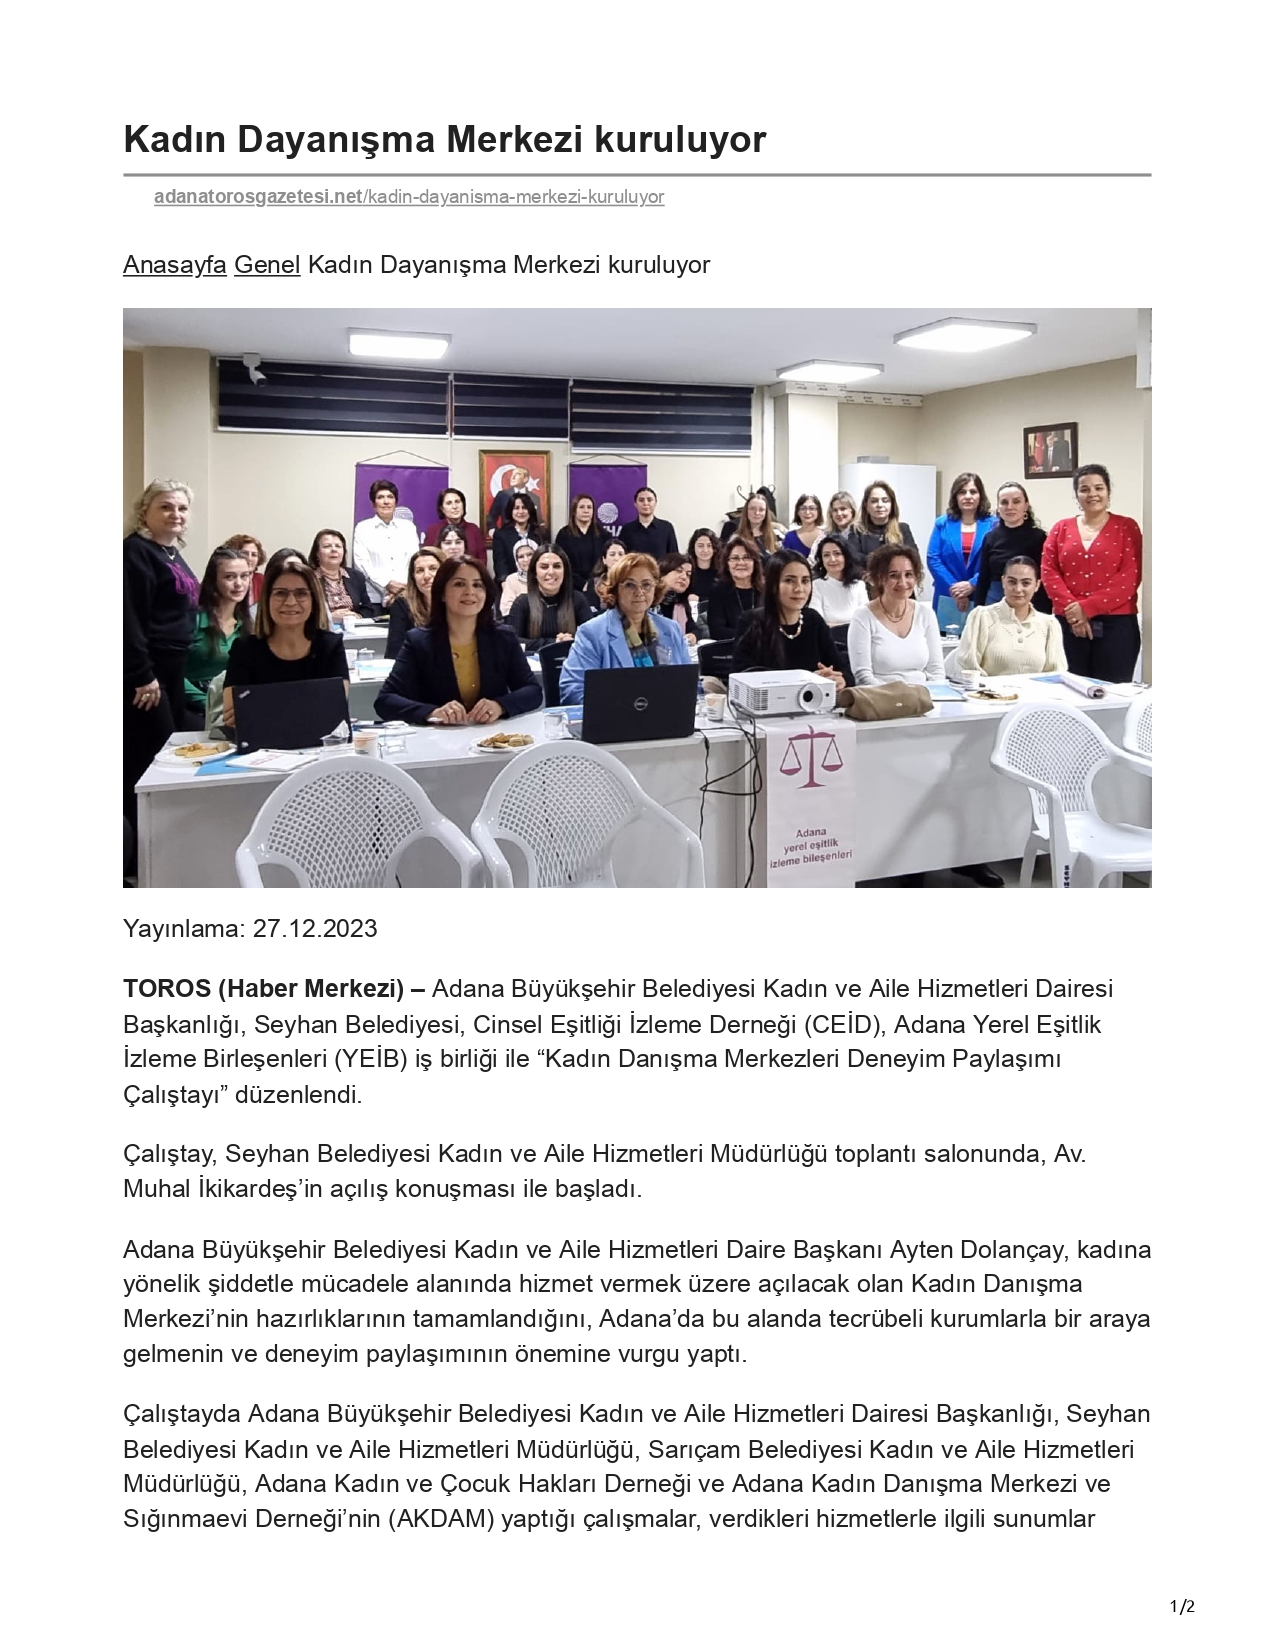 Adana Toros Gazetesi: Kadın Dayanışma Merkezi Kuruluyor